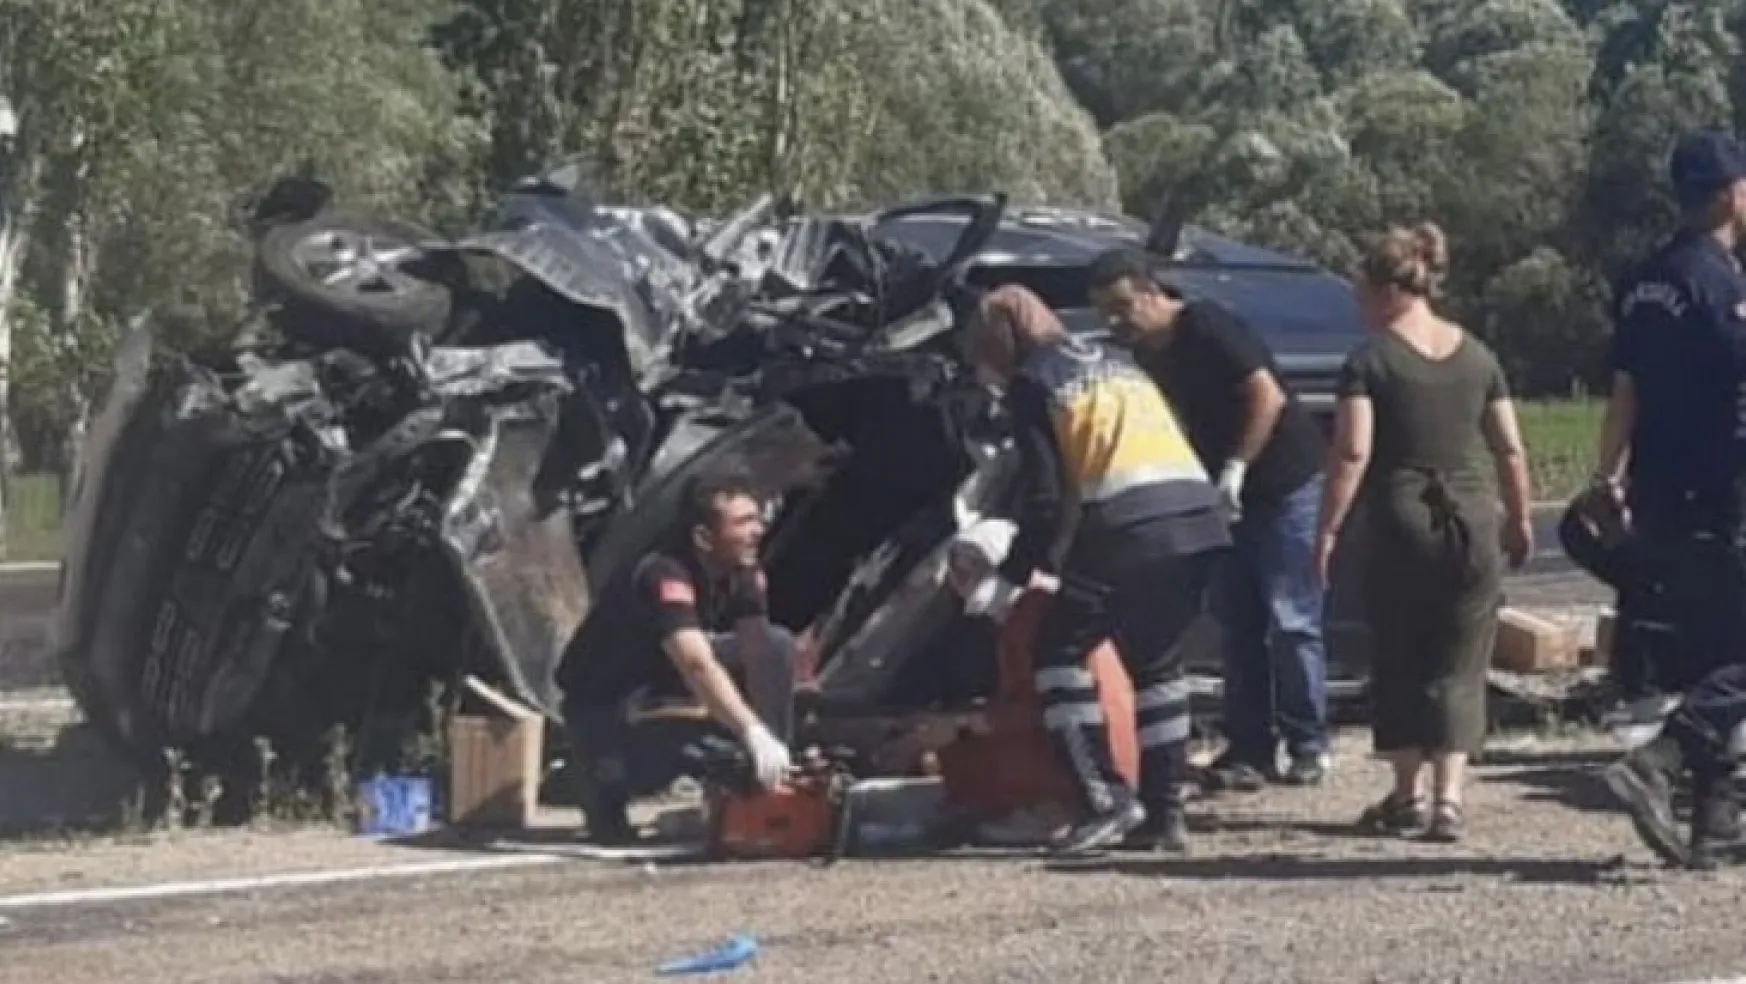 Sarız'da trafik kazası: 1 ölü 2 yaralı